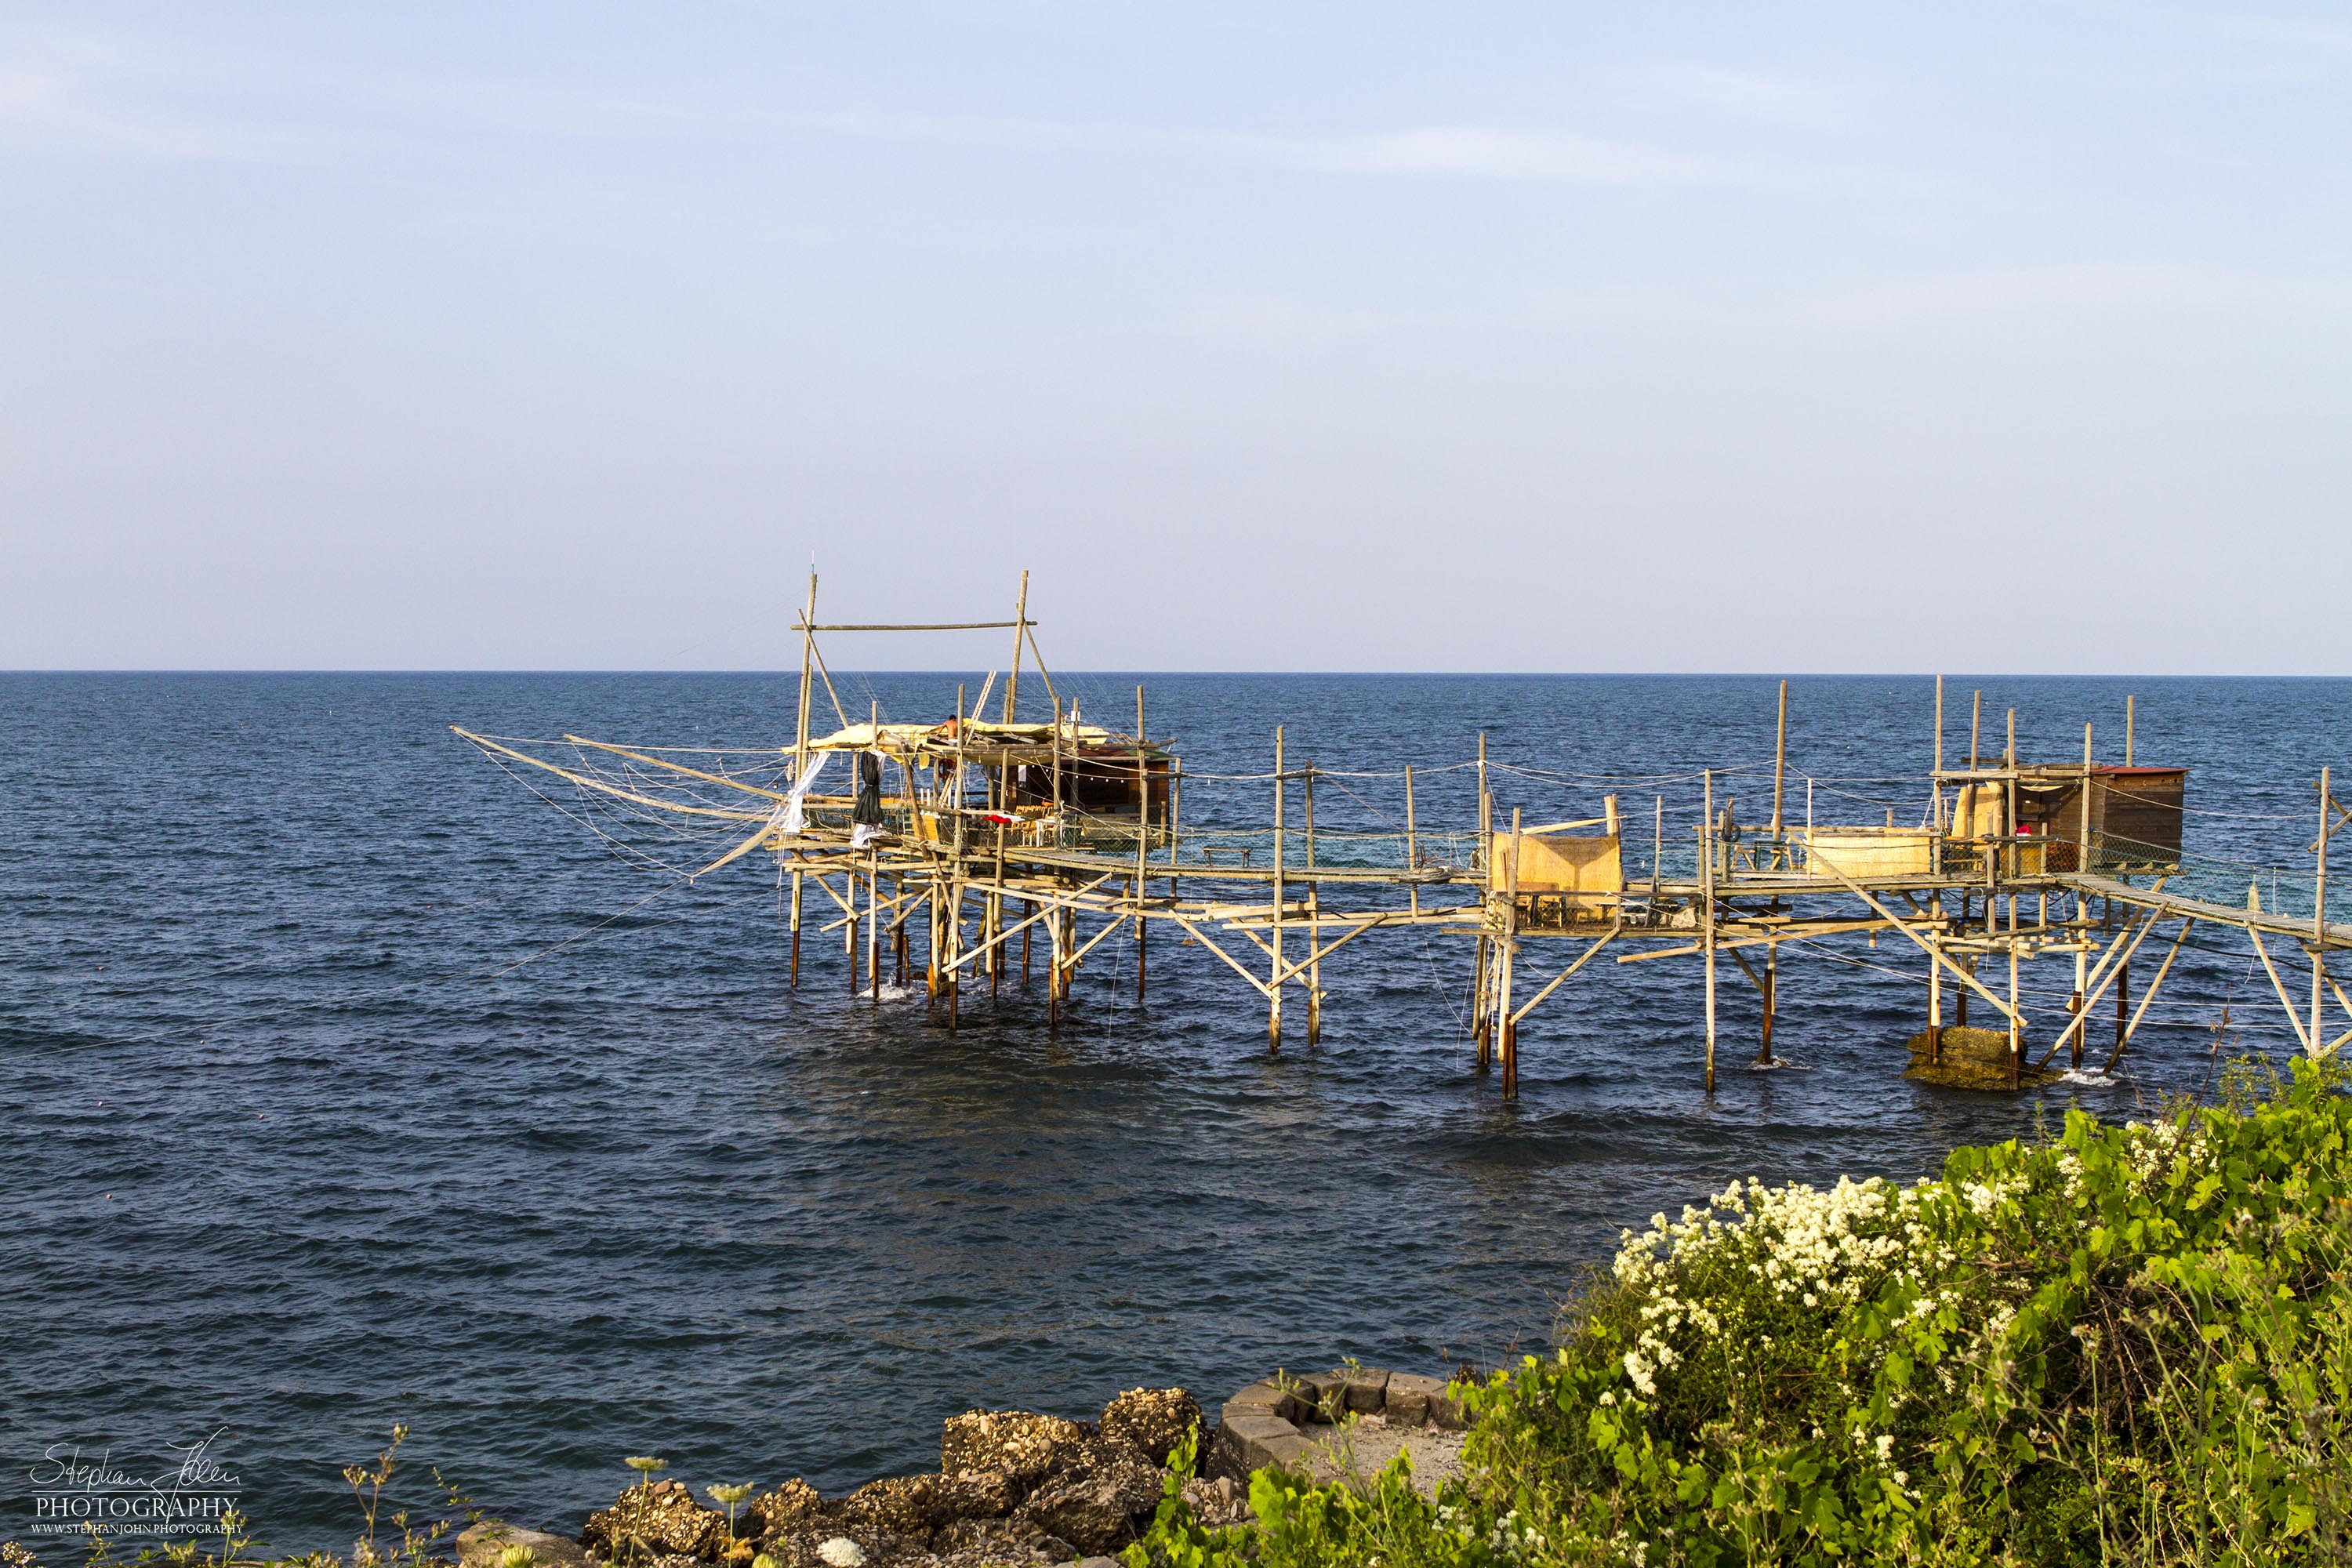 Trabucco oder auch Trabocco ist ein an der abruzzesischen Küste der Adria zum Fischfang errichteter Pfahlbau.